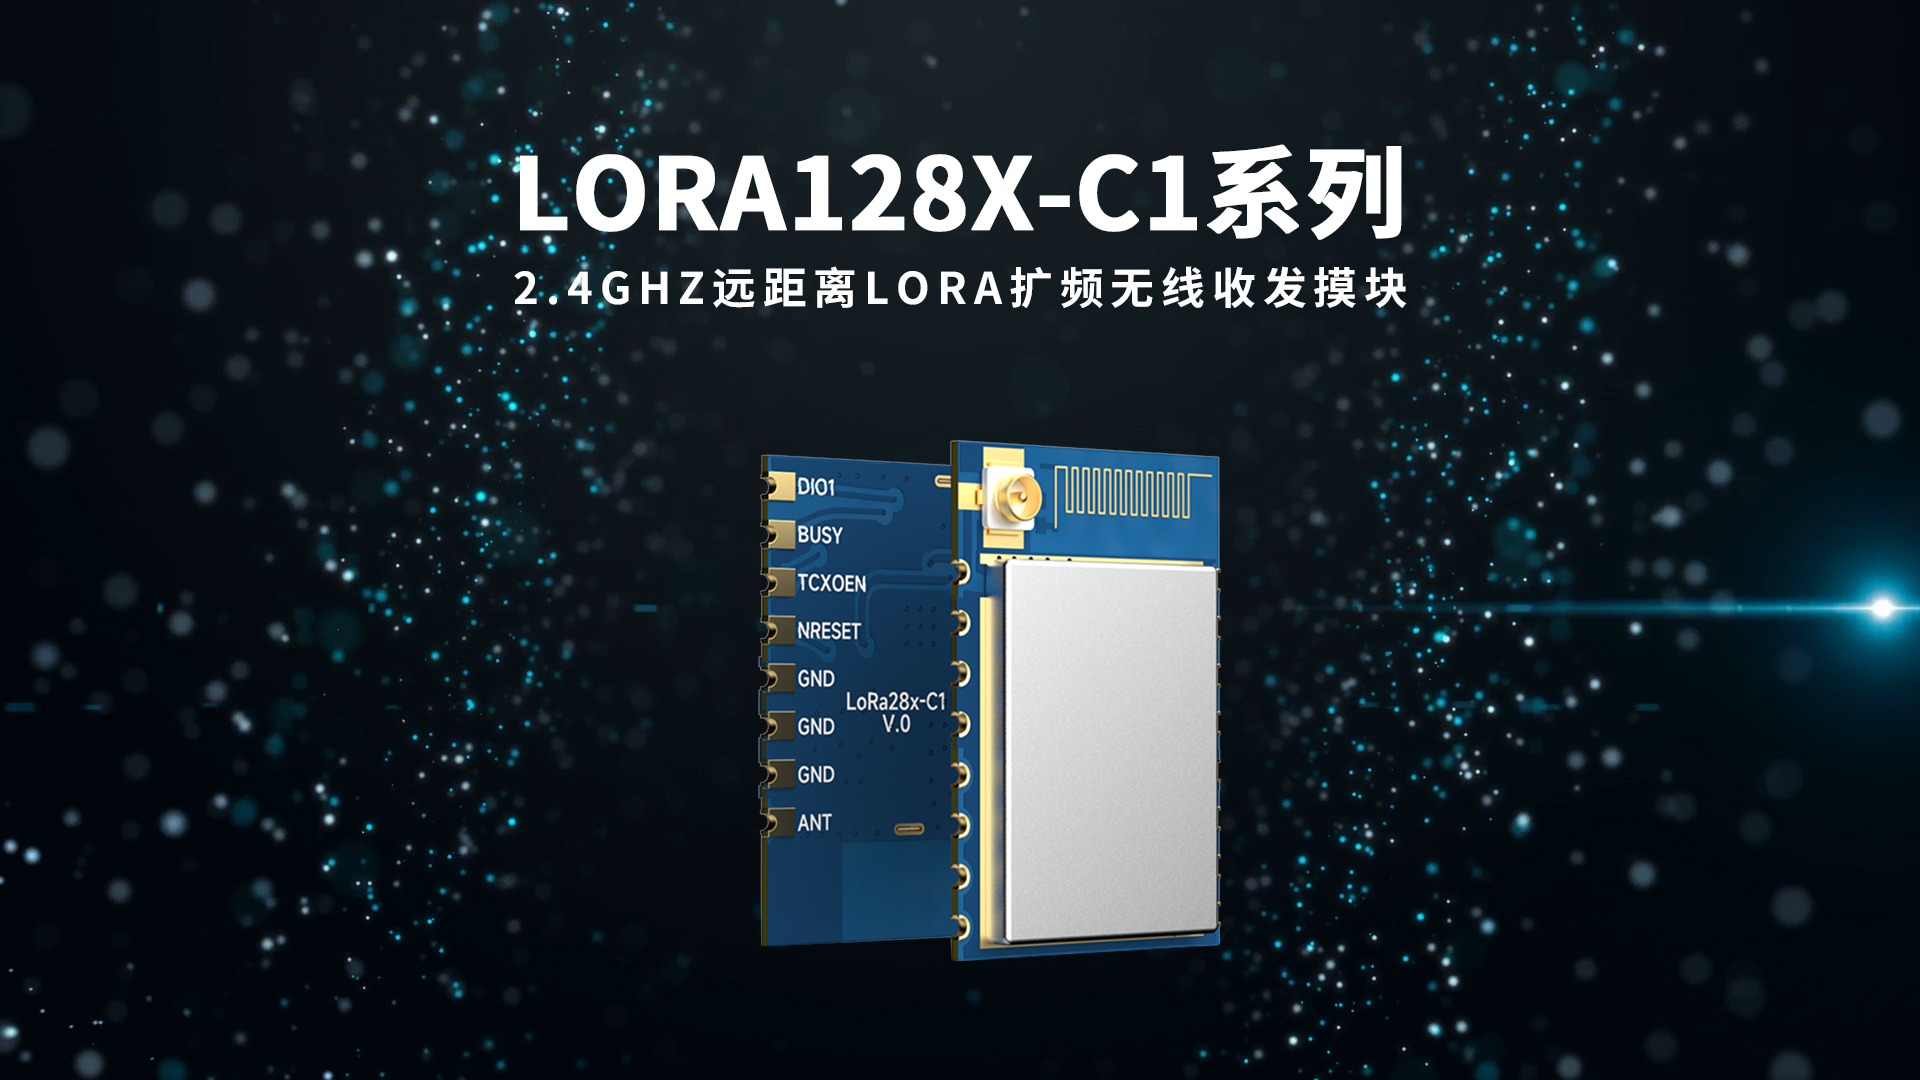 LoRa128X-C1 2.4GHz 远距离LoRa无线收发模块 IPEX 和 PCB antenna 二合一